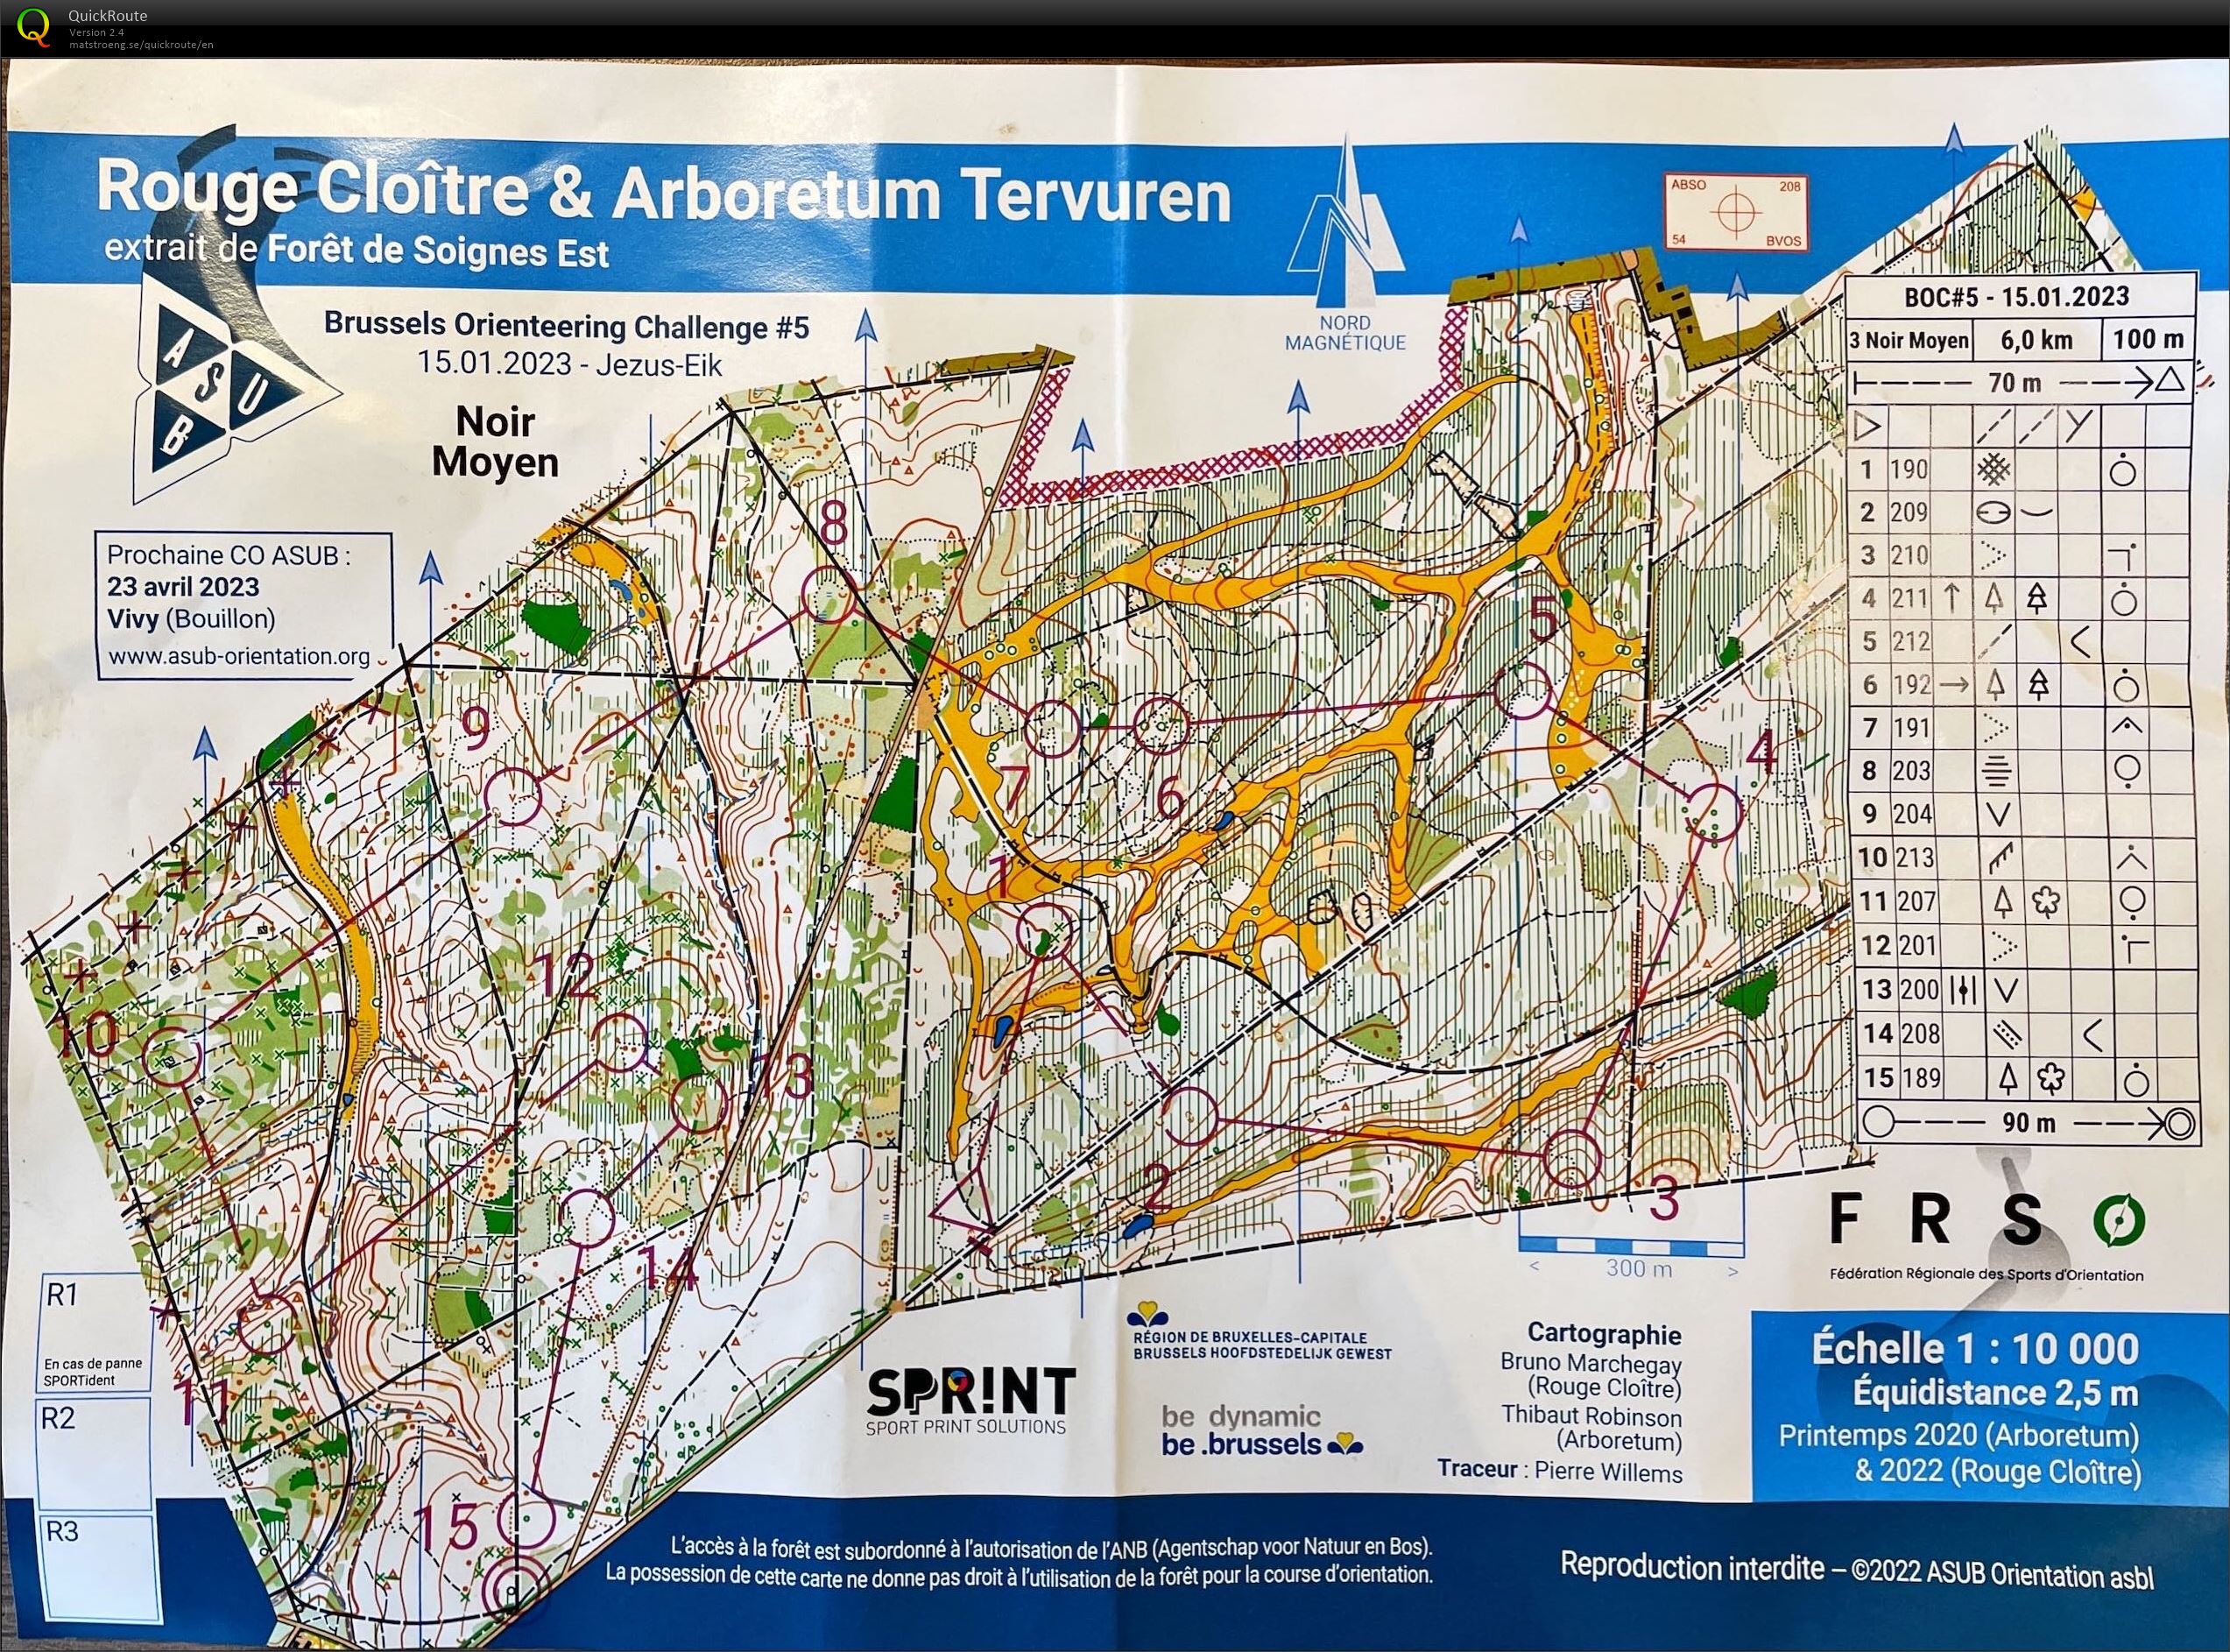 Brussels Orienteering Challenge #5: Rouge Cloitre & Arboretum Tervuren (15.01.2023)